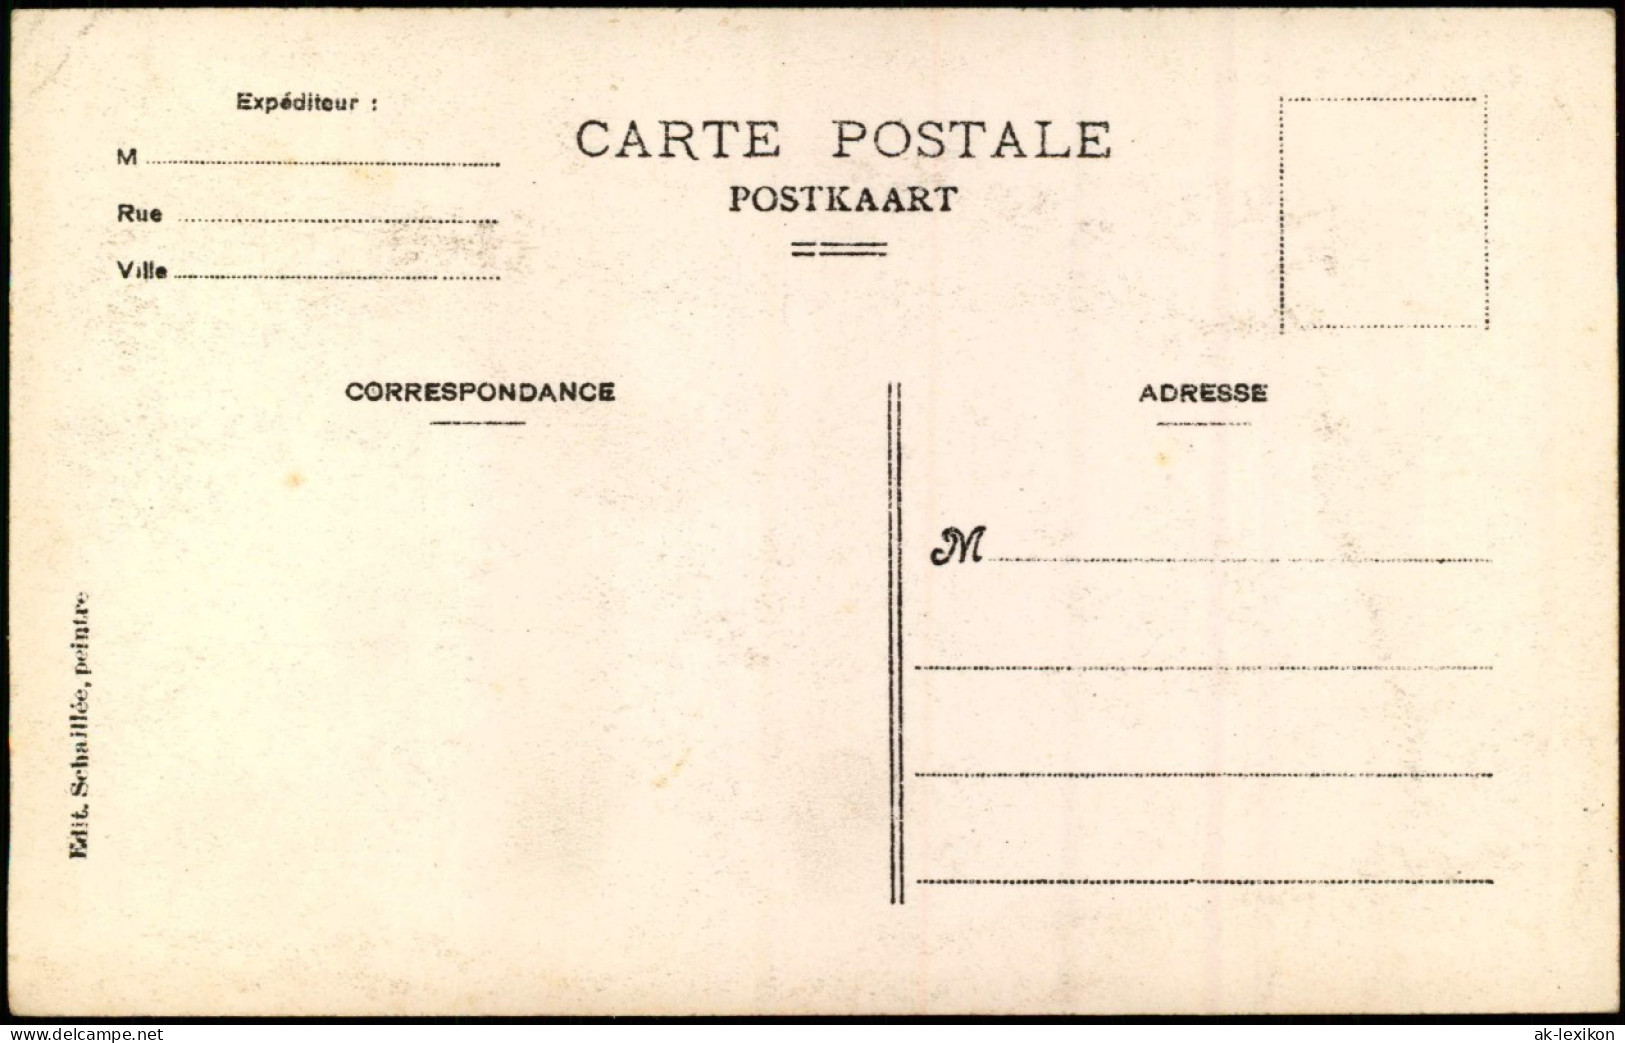 Postkaart Ternat Ternath Place De La Station. 1913 - Otros & Sin Clasificación